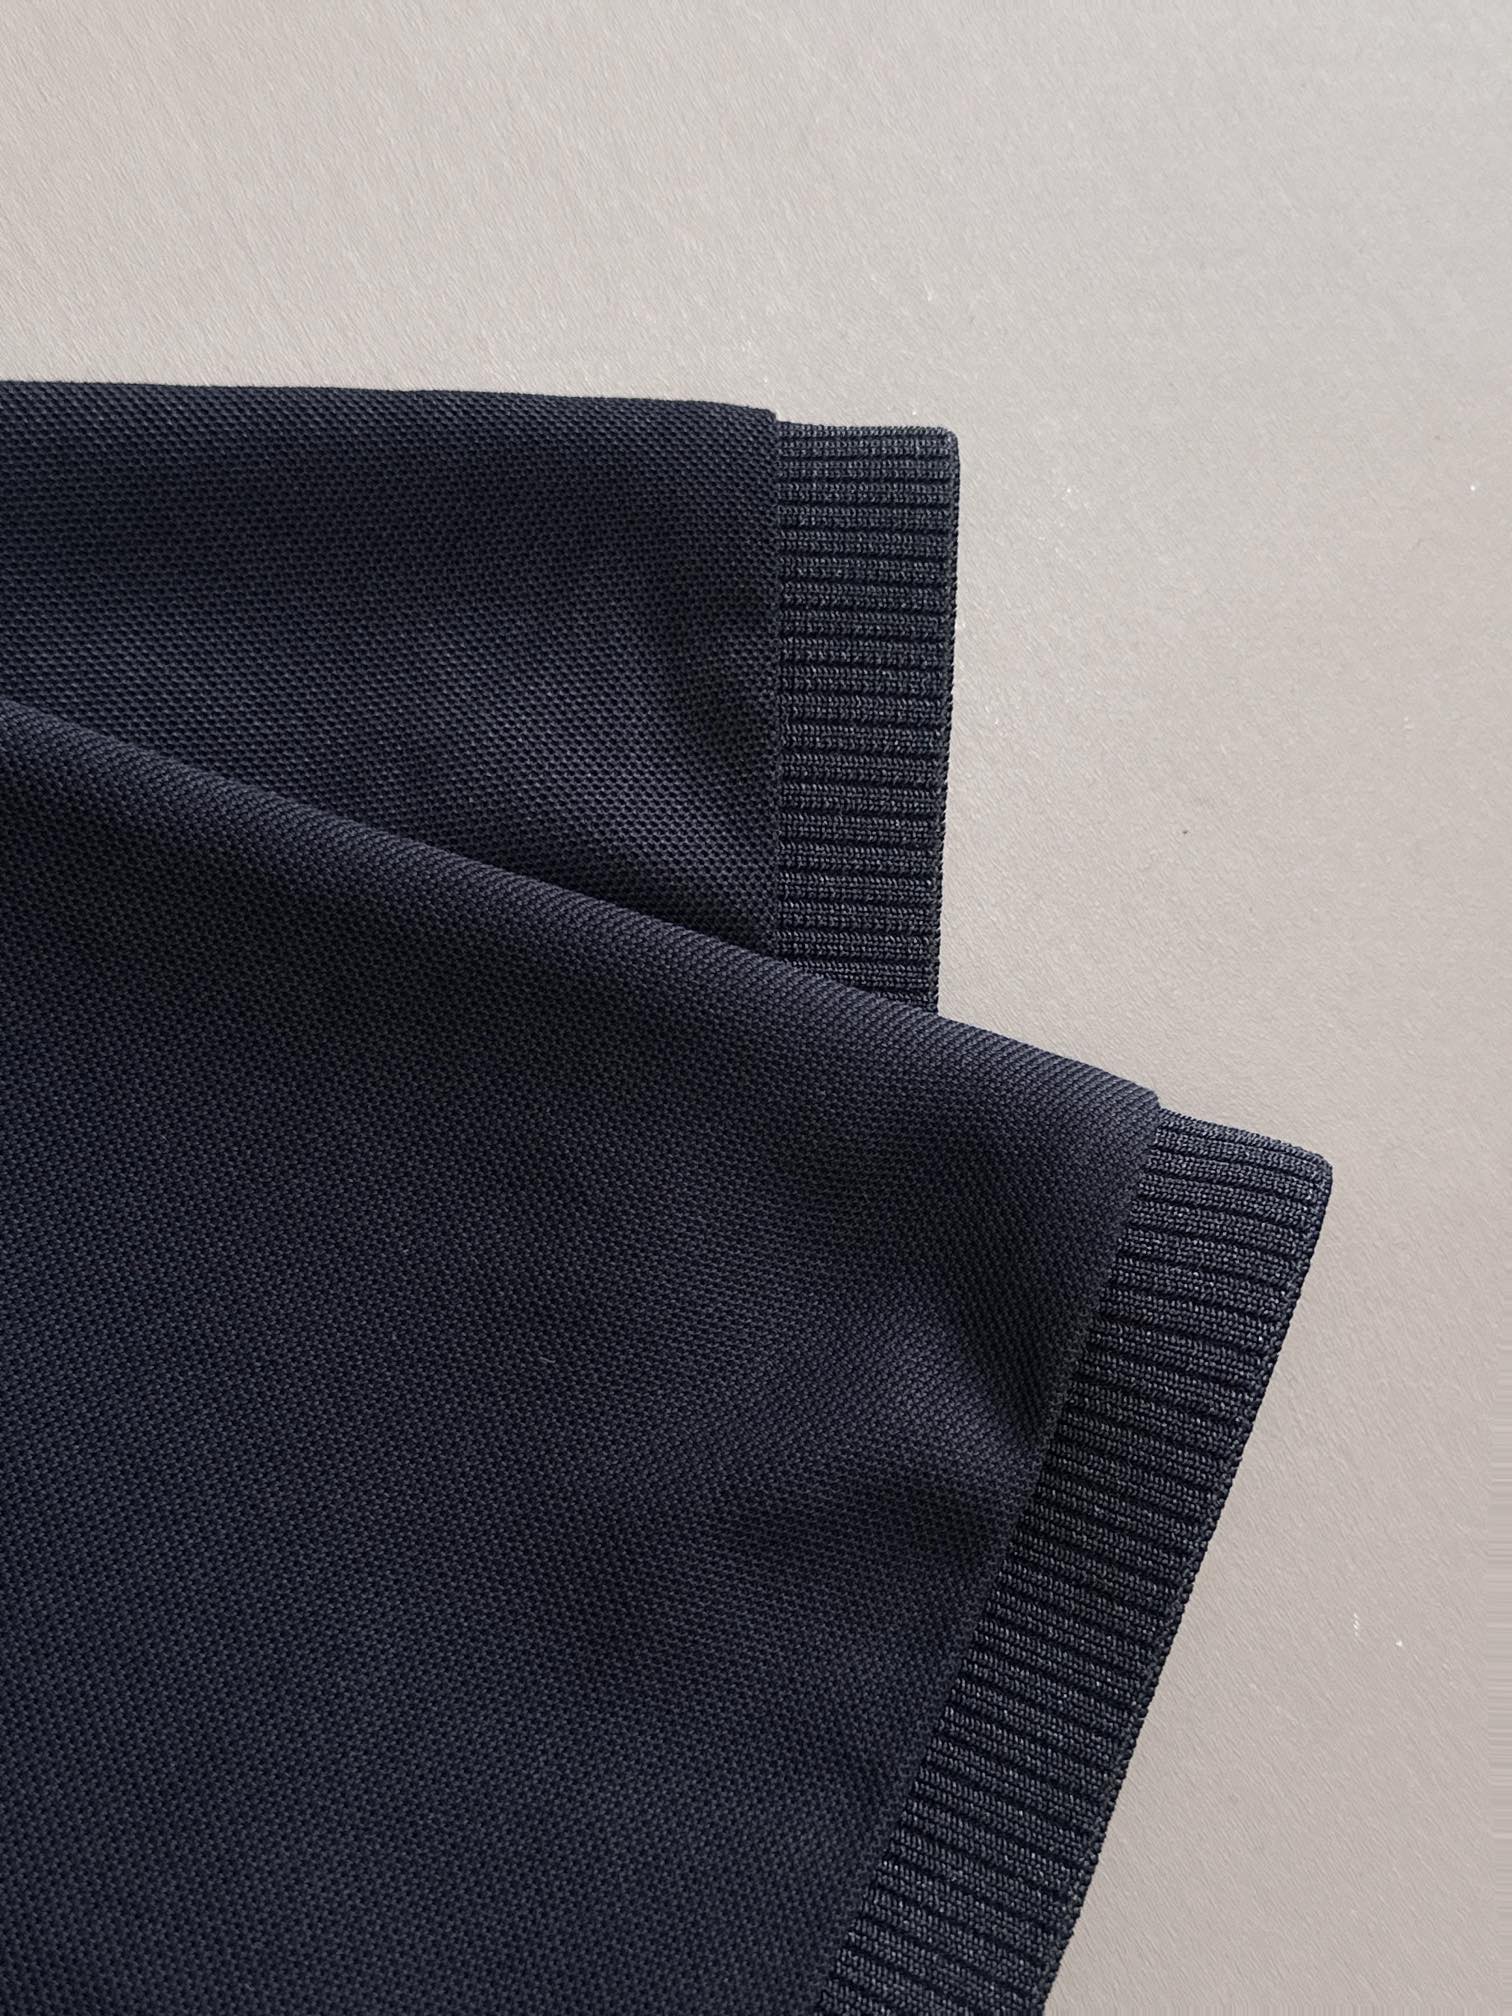 杰尼亚%新疆长绒棉面料柔软舒适透气夏季限量款短袖Polo系列-